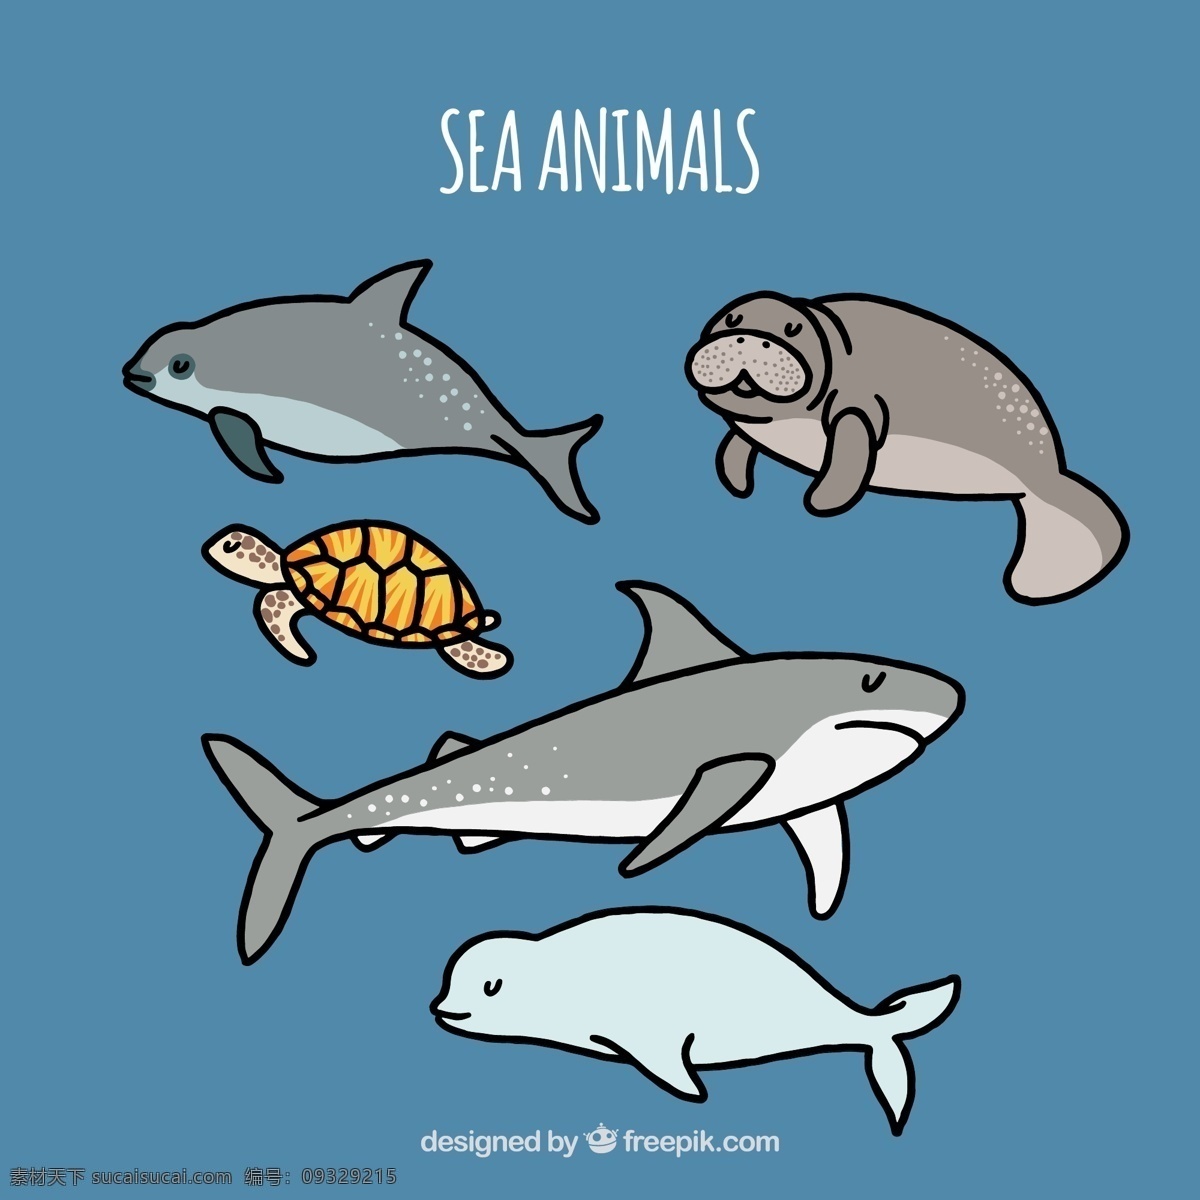 组 海洋生物 动物 可爱 卡通 卡哇伊 矢量素材 小动物 创意设计 简约 创意 元素 生物元素 动物元素